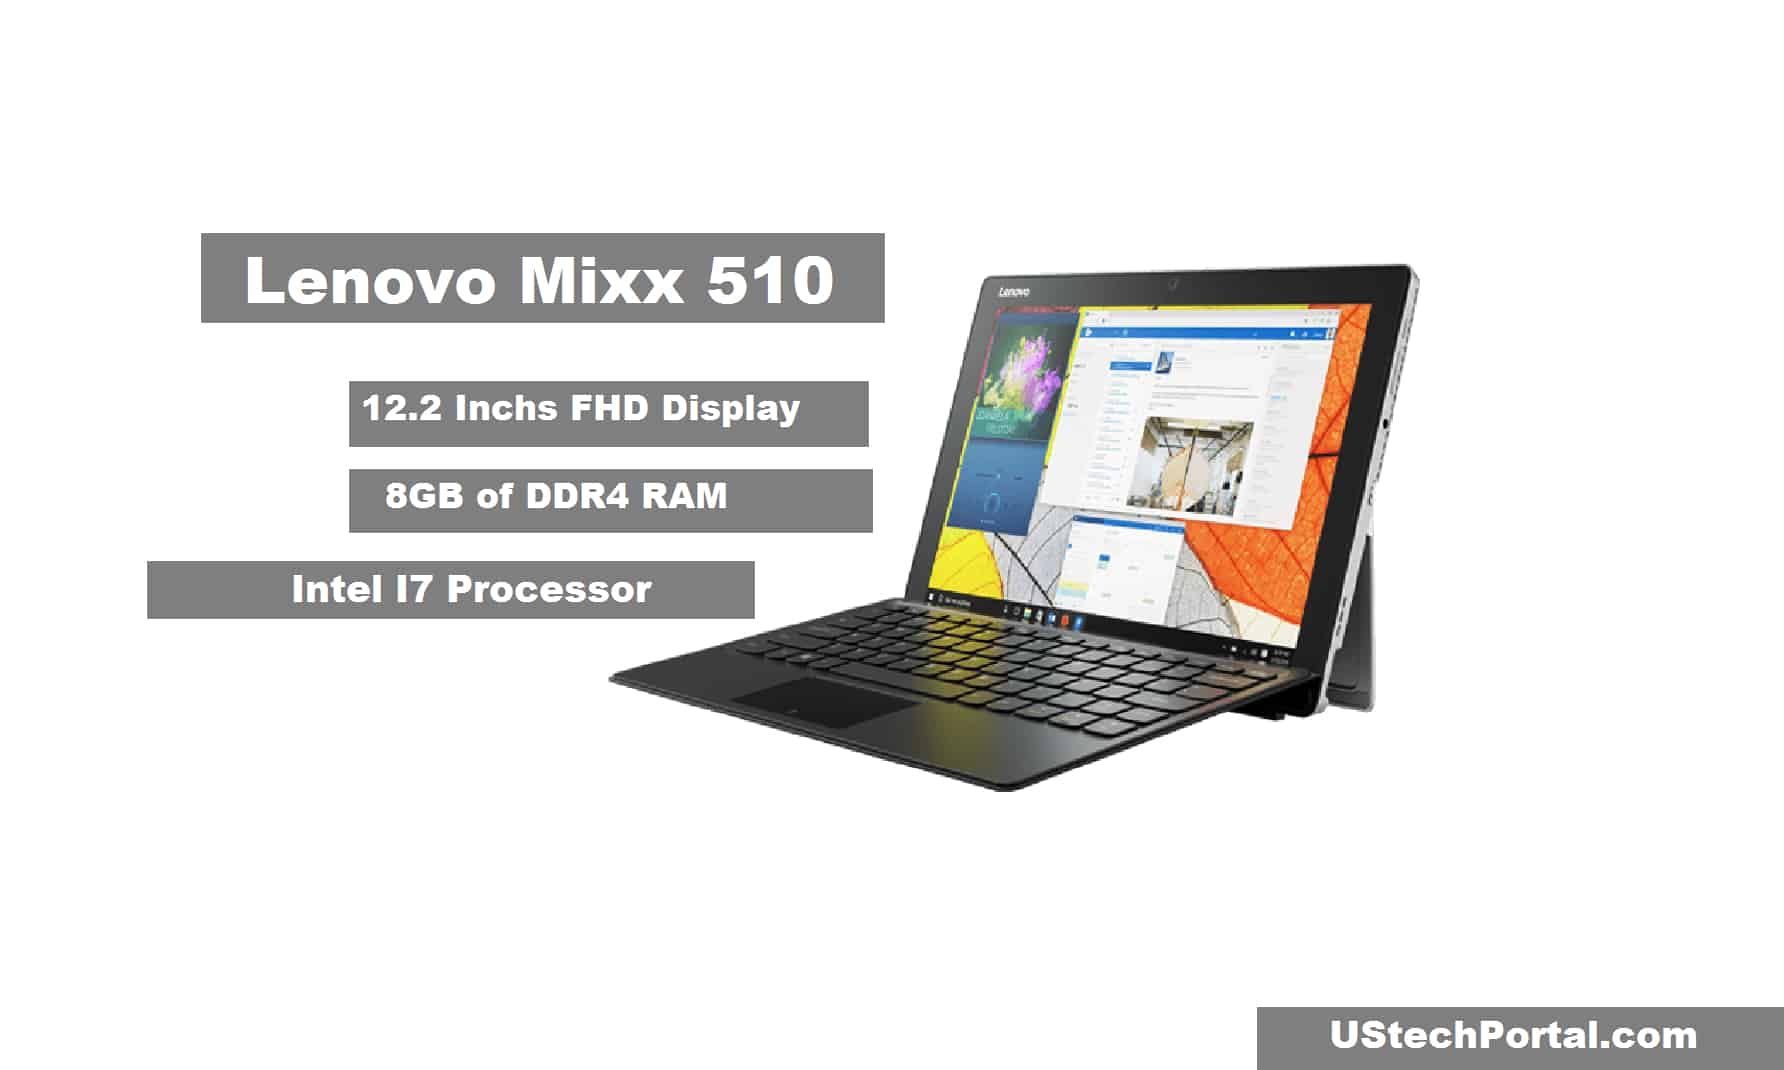 Lenovo Mixx 510 Review : Advantages, Disadvantages, Release Date